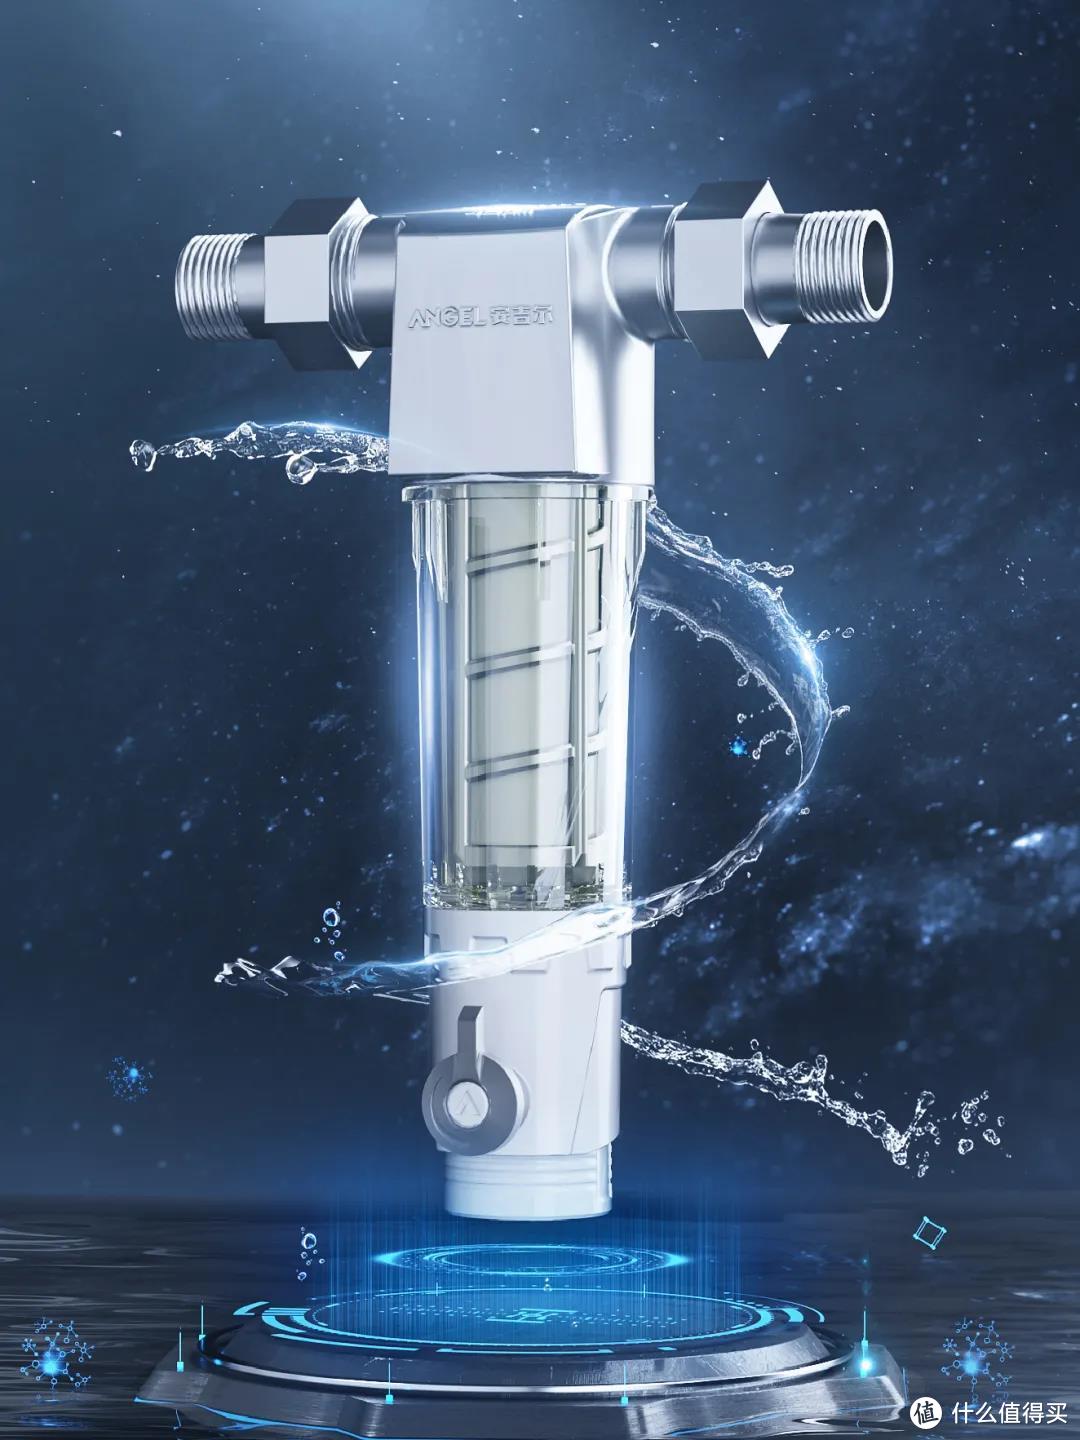 安吉尔净水器升级净水新体验 搭载航天黑科技